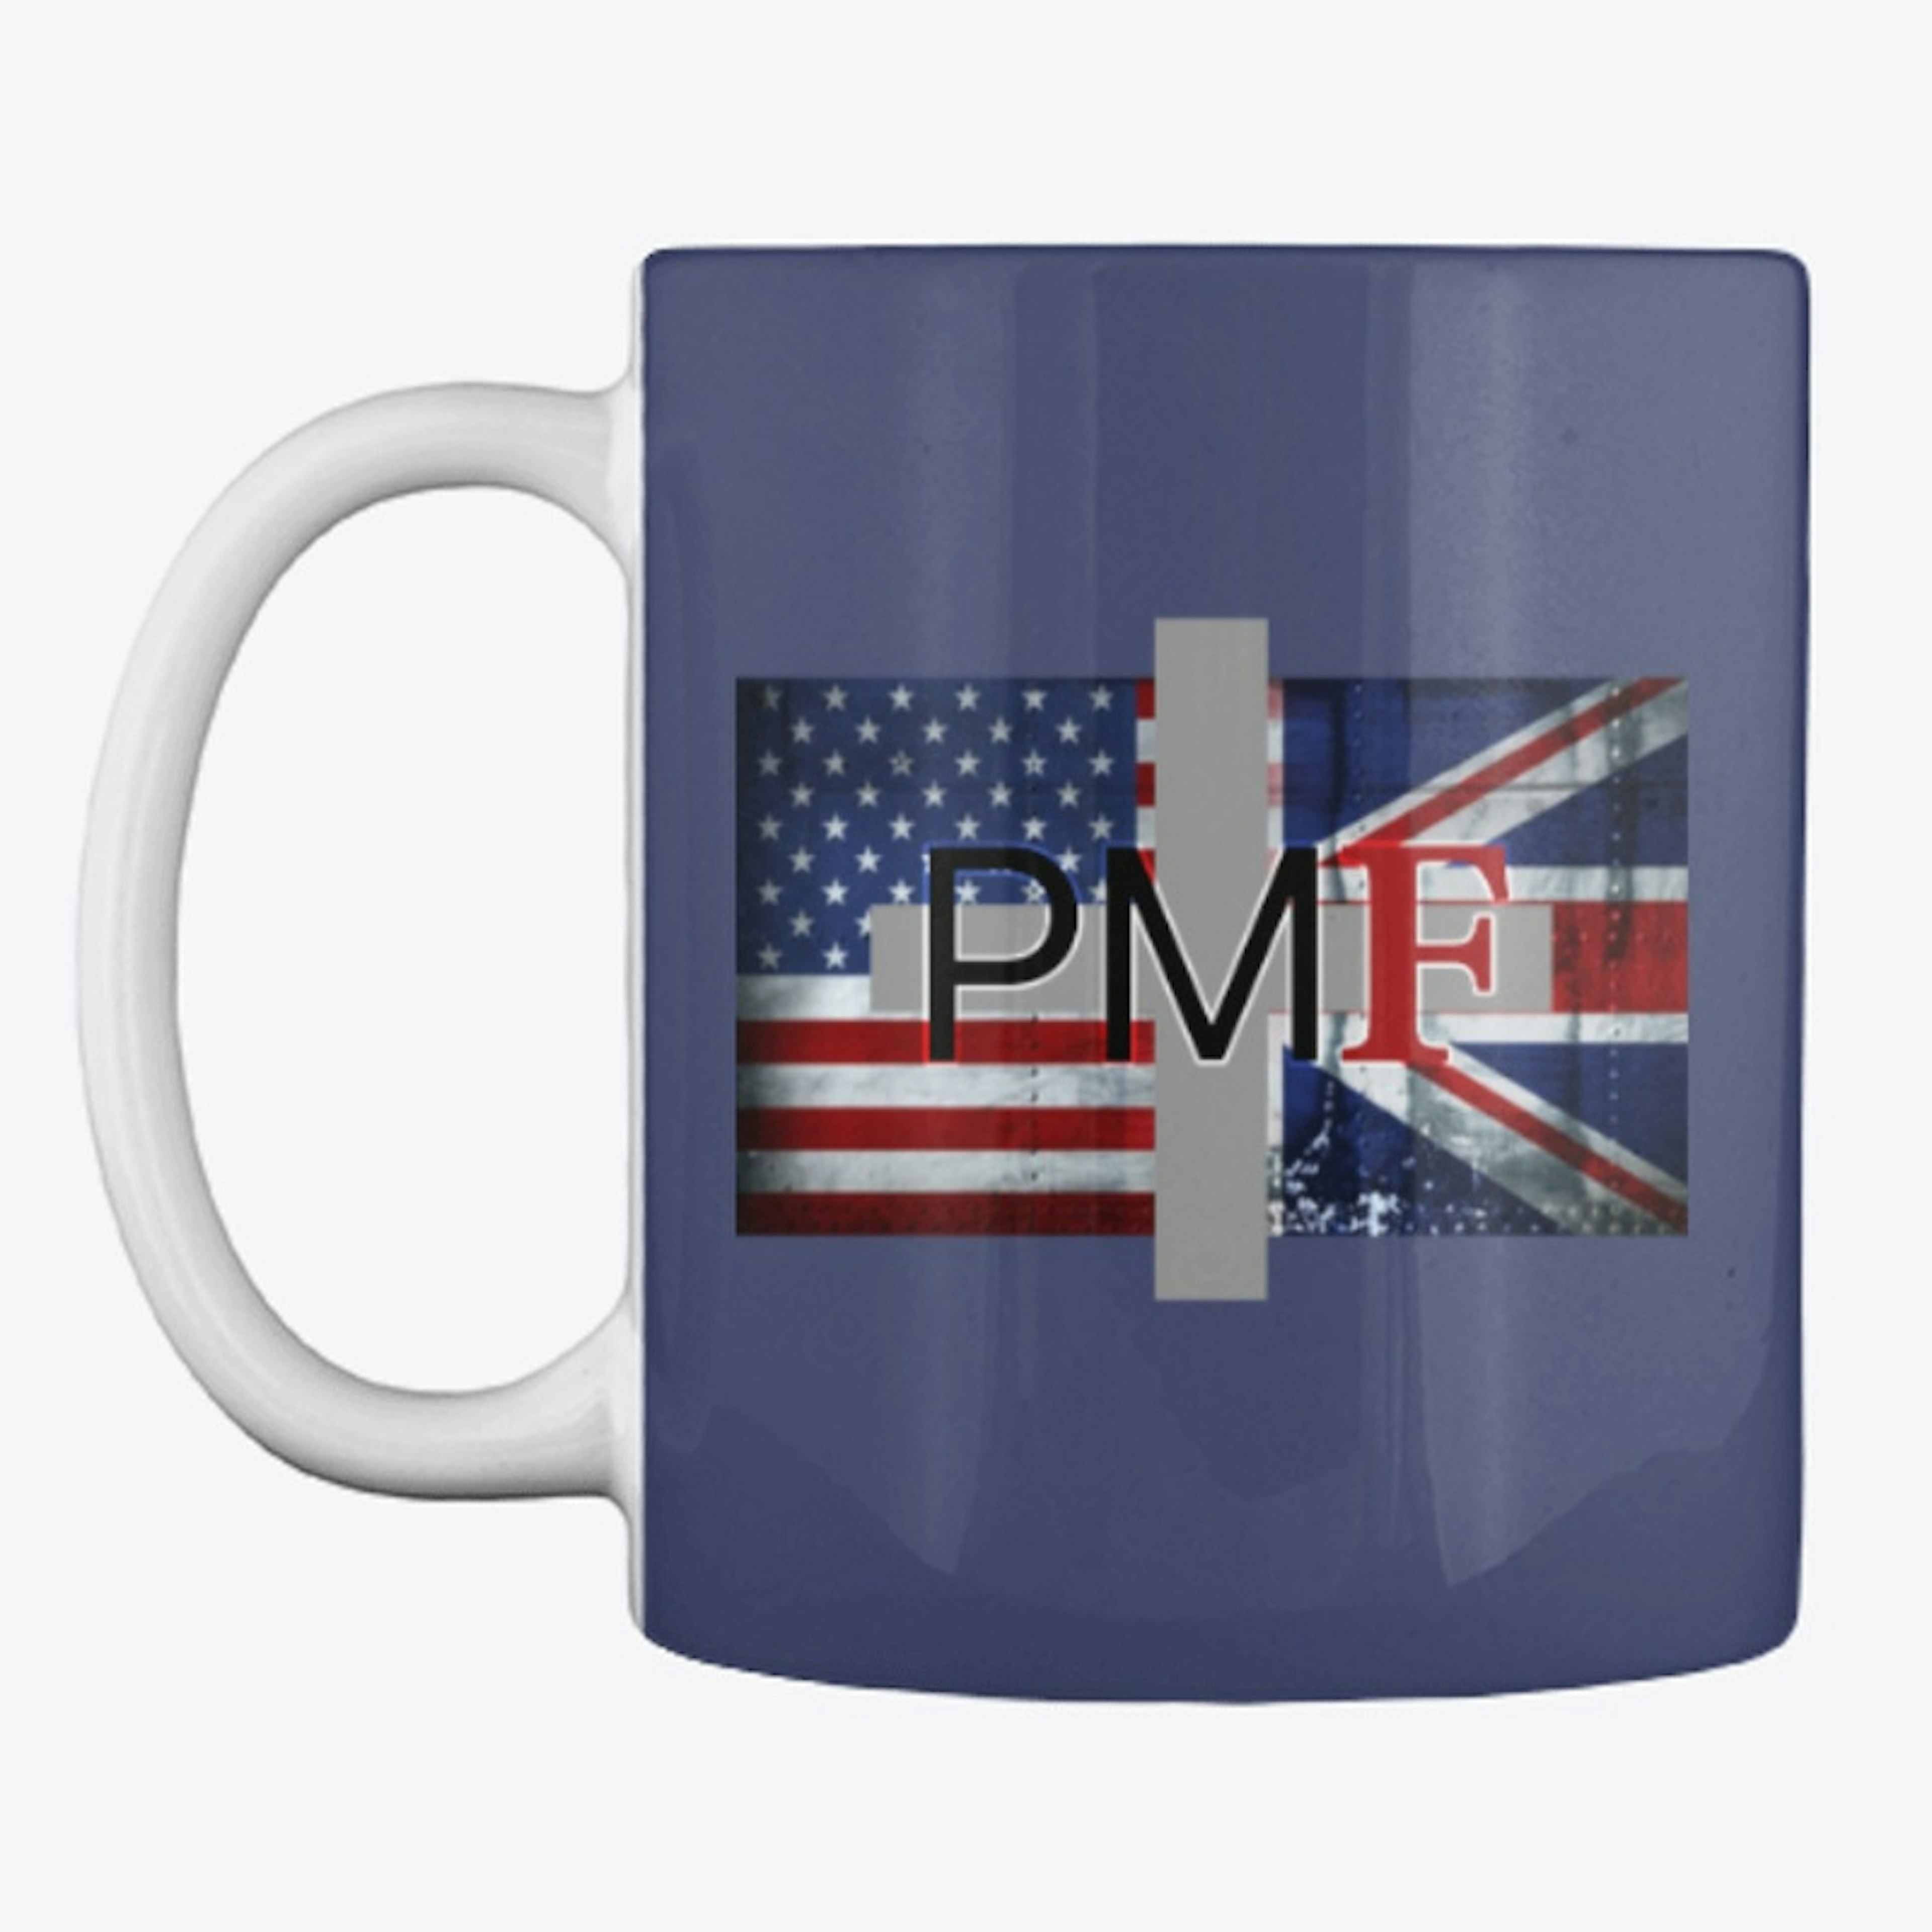  Make Britain Great Again Mug